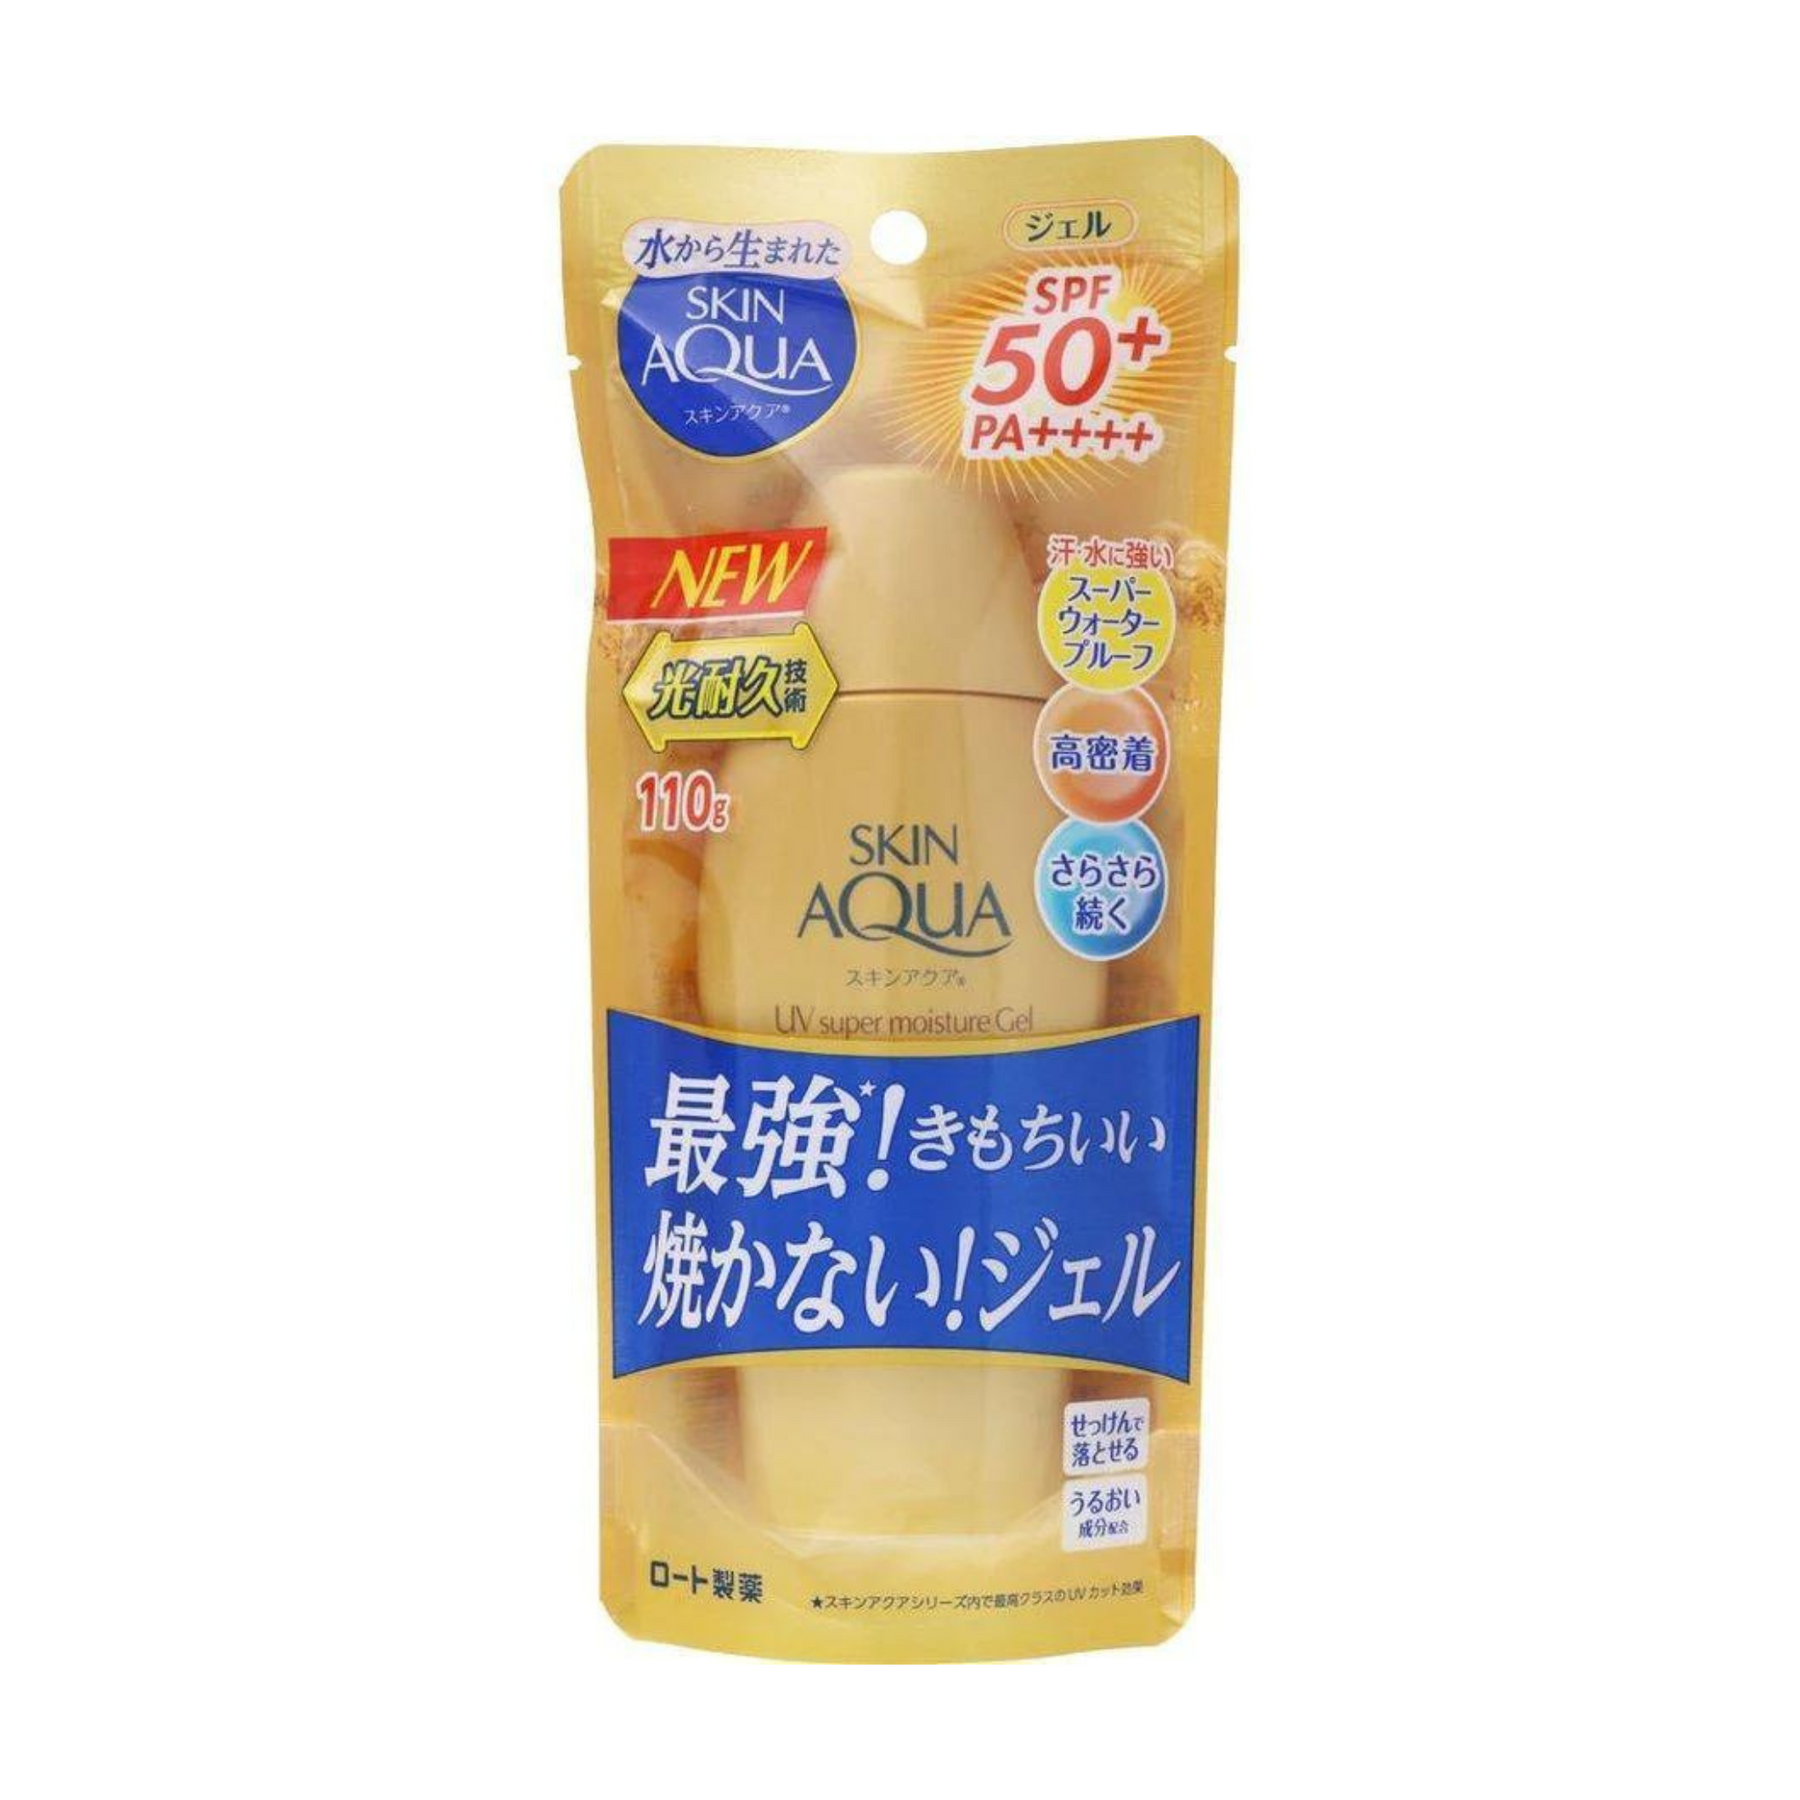 Super Moisture Gel Gold Sunscreen SPF 50+PA++++